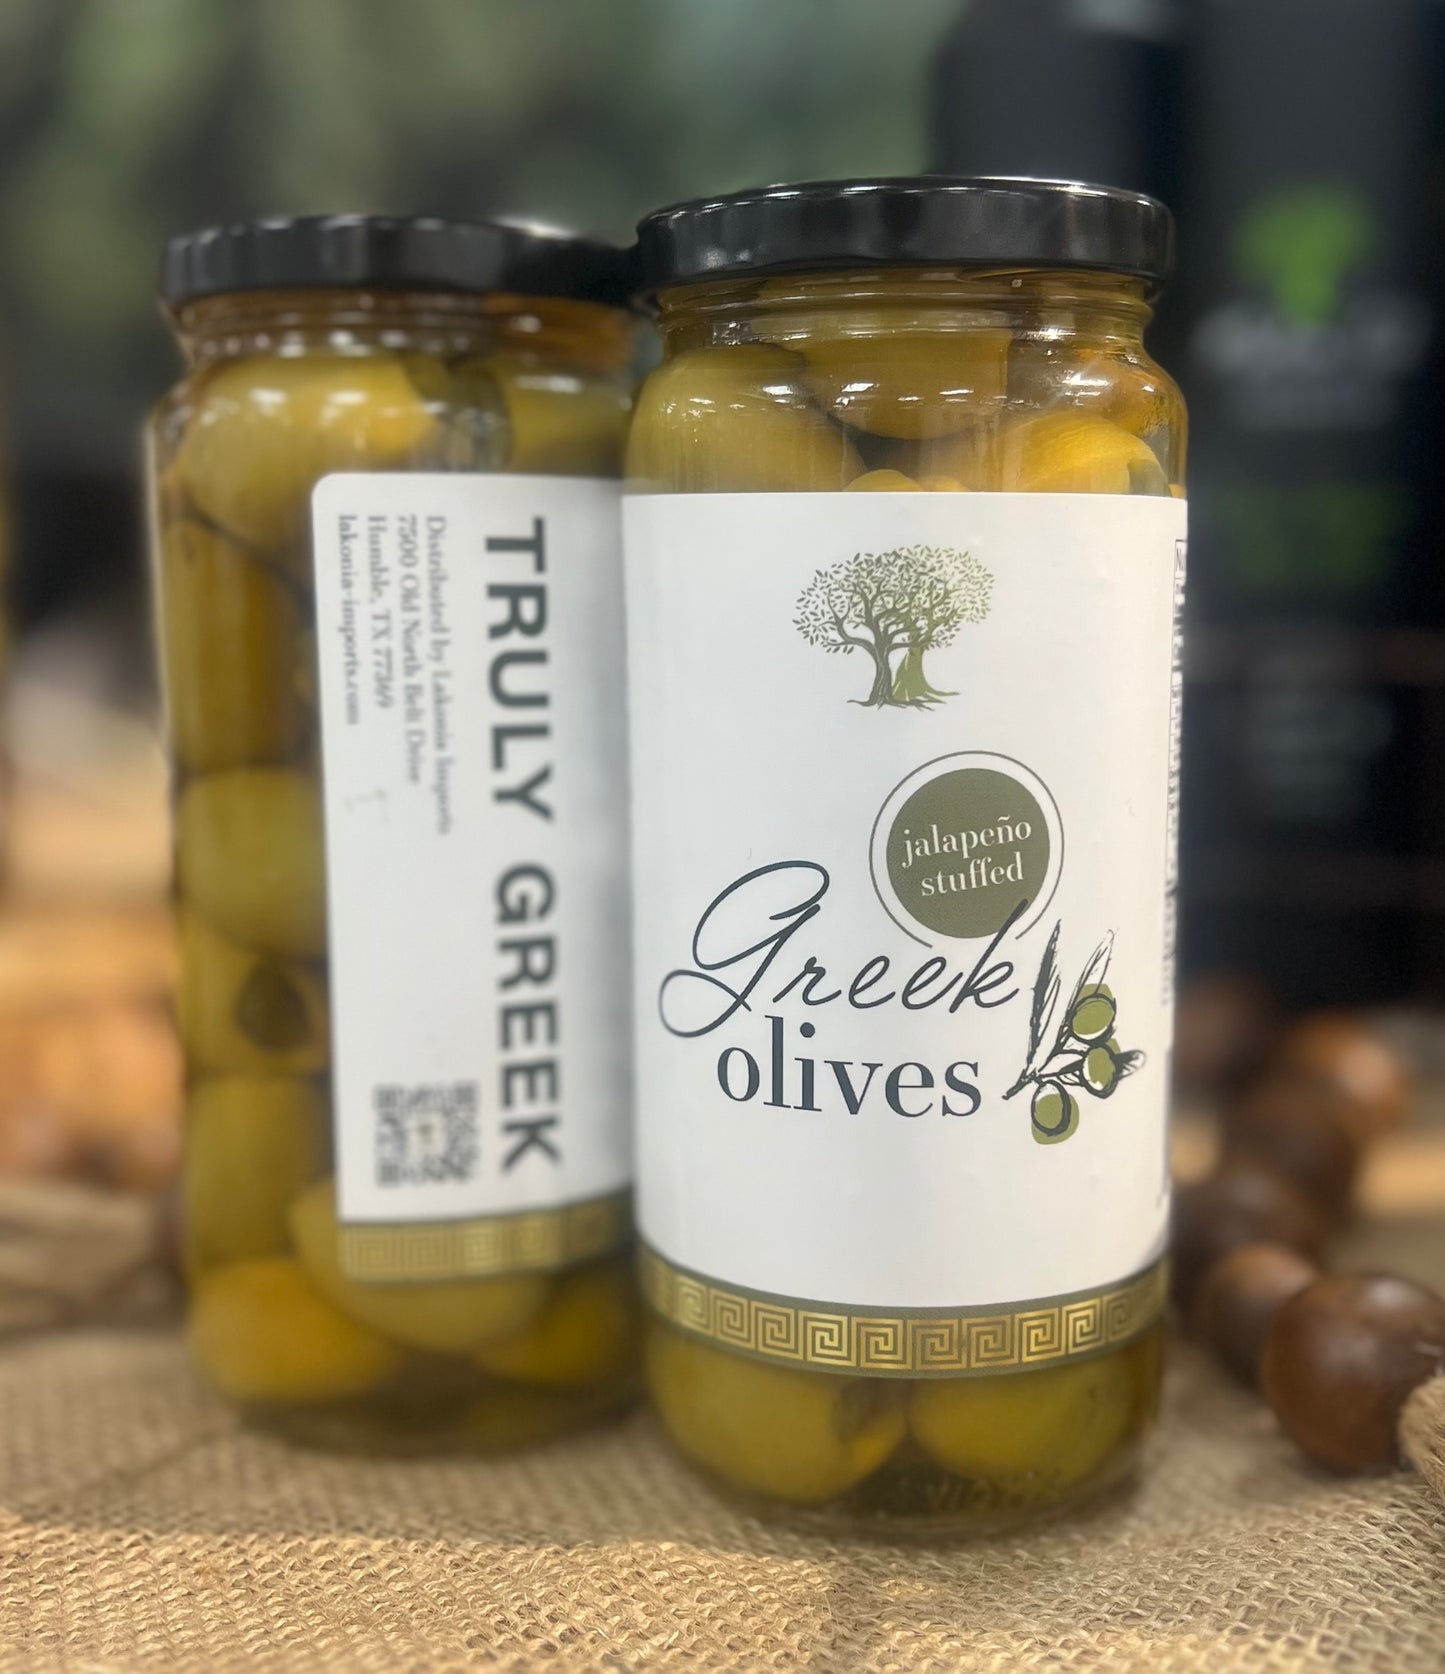 Jalapeno Stuffed Olives